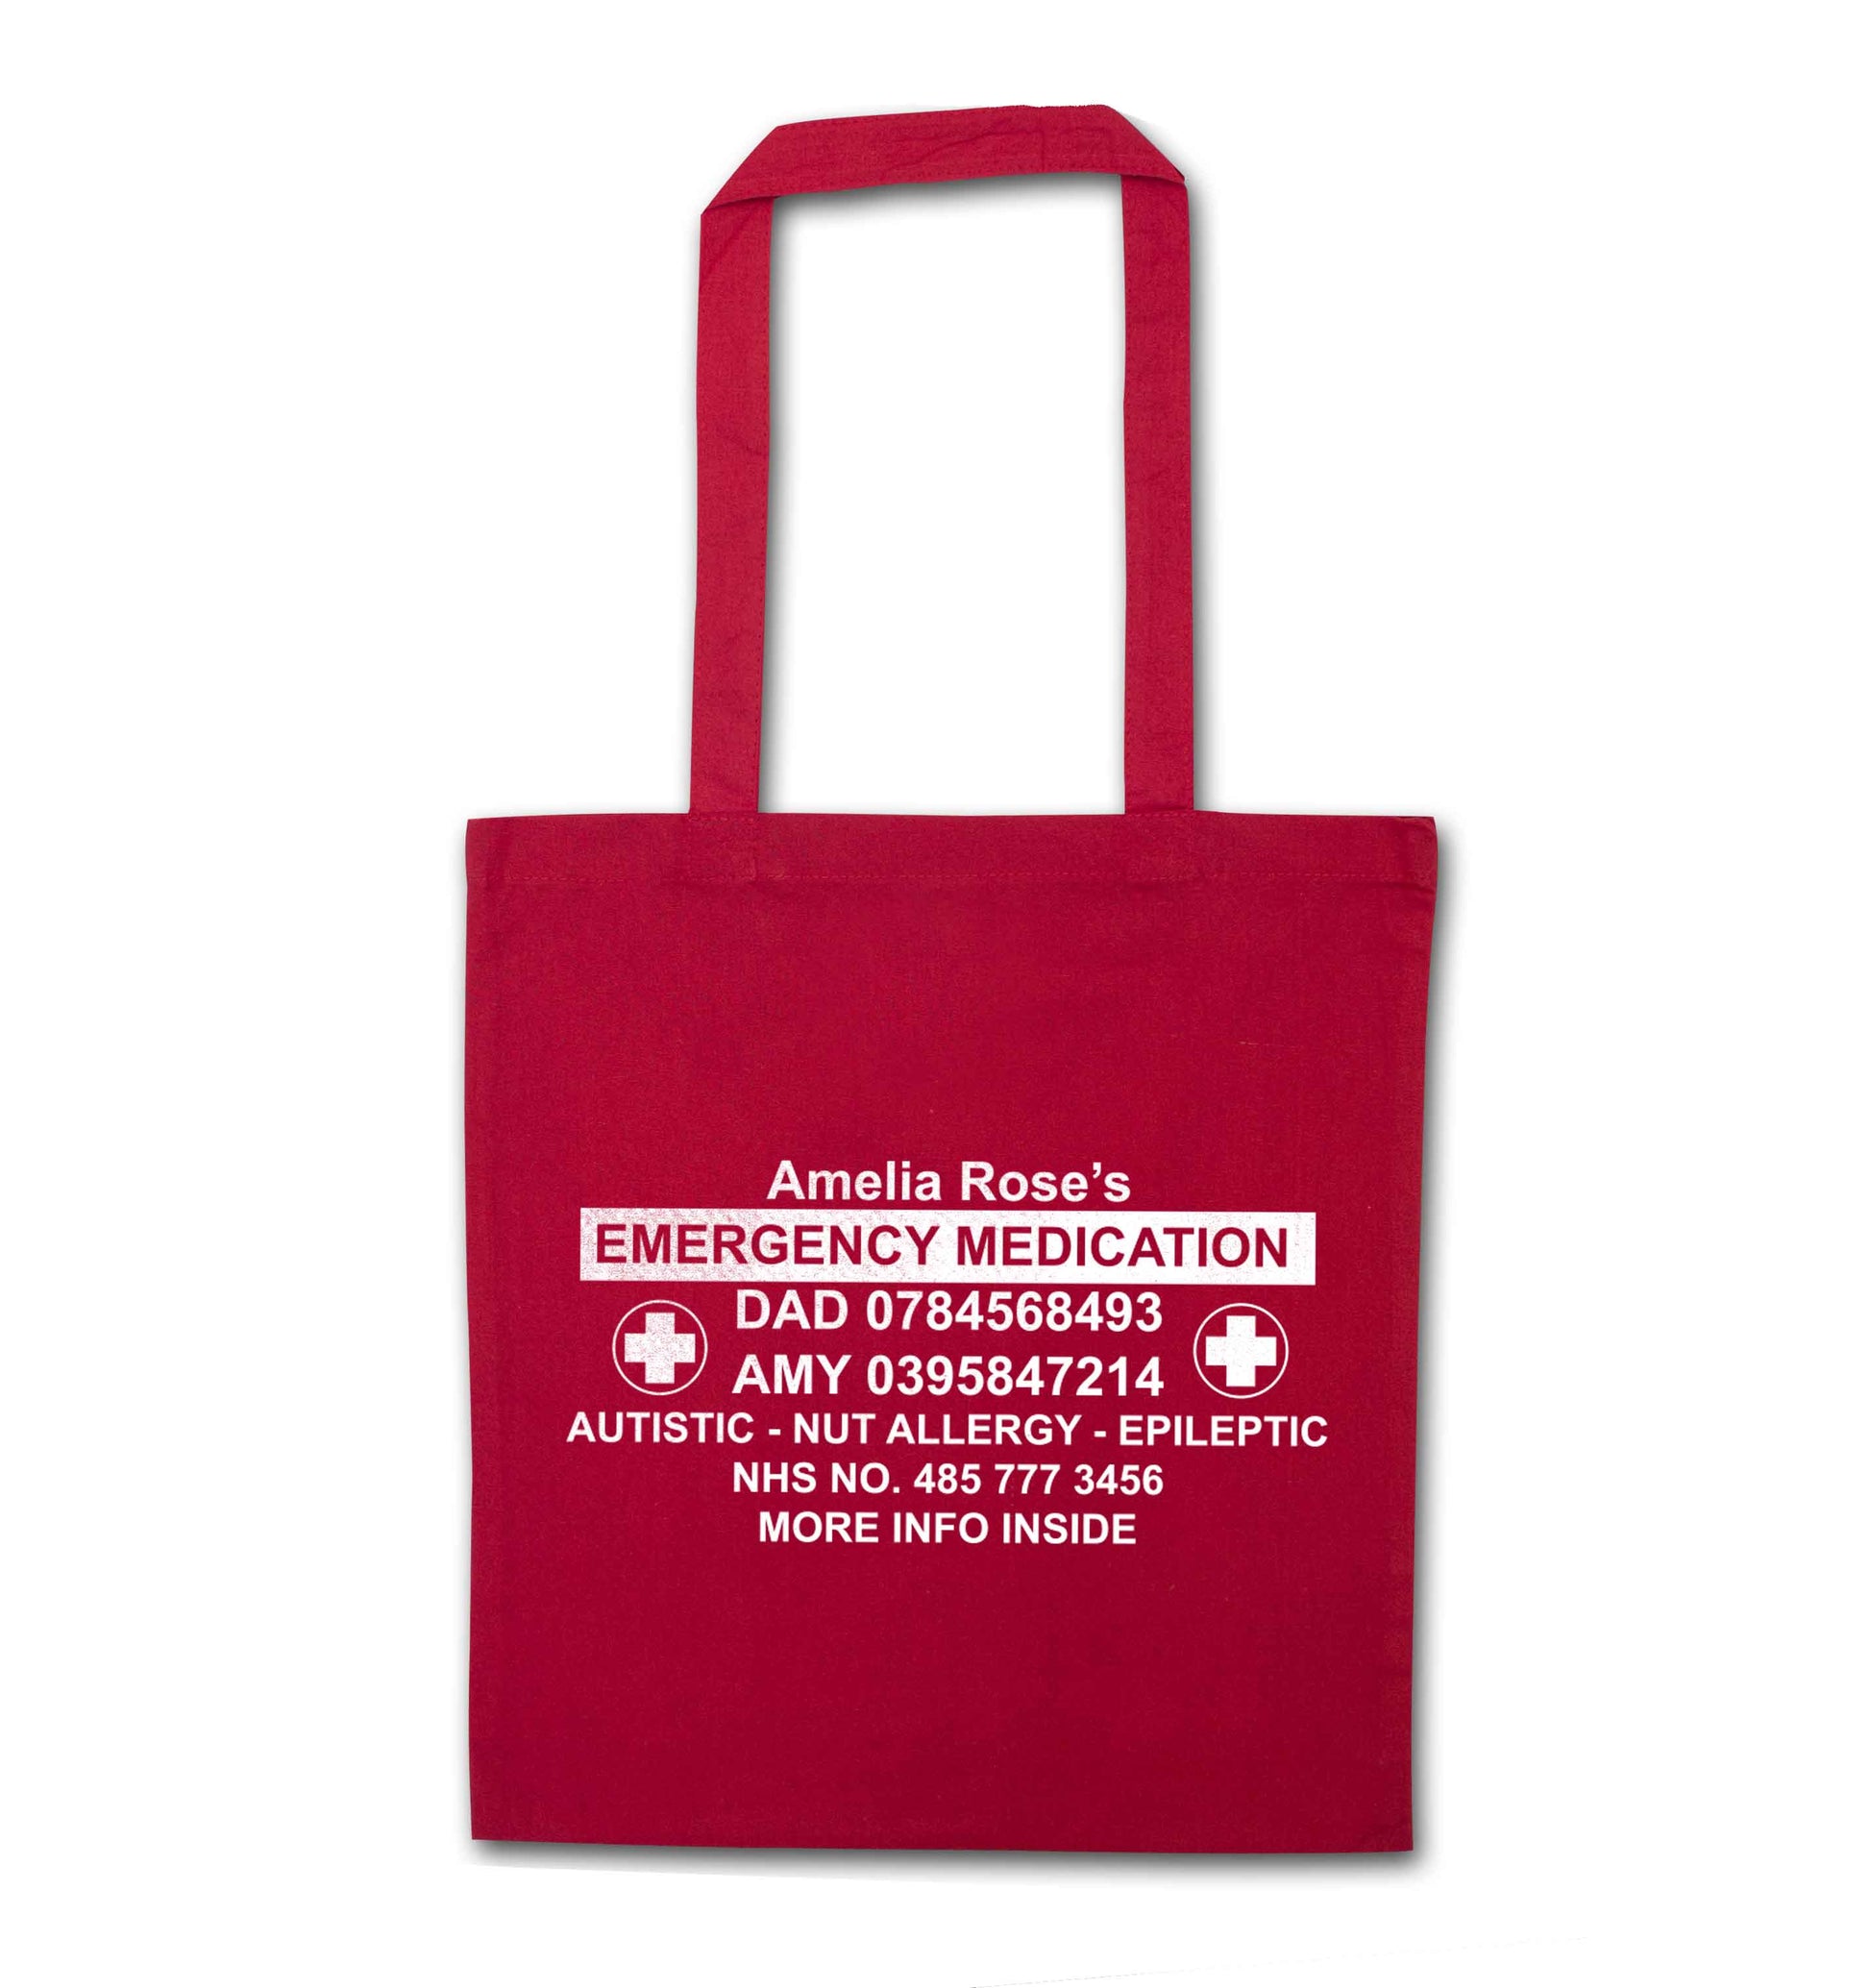 Personalised emergency medication bag red tote bag